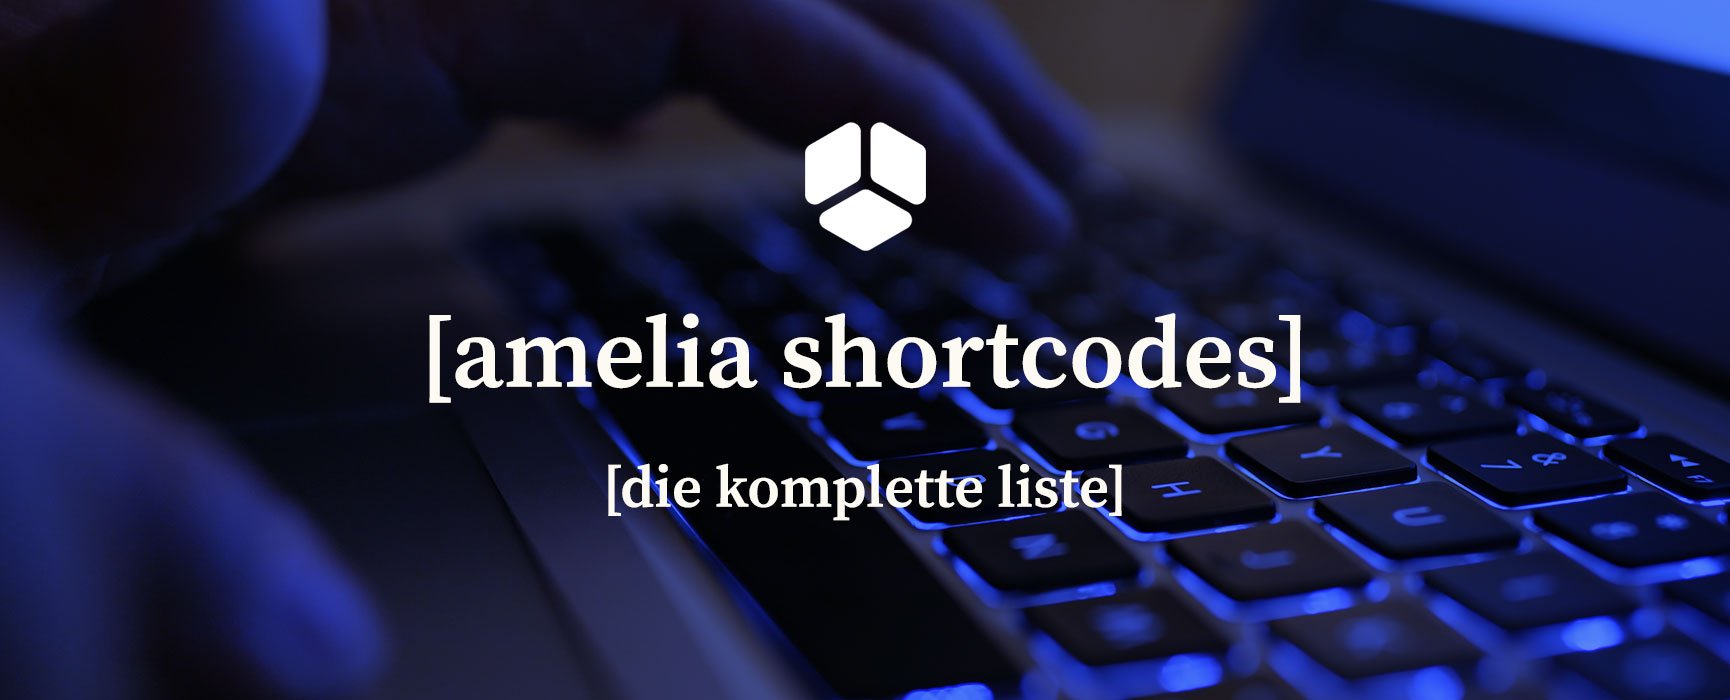 amelia-shortcodes